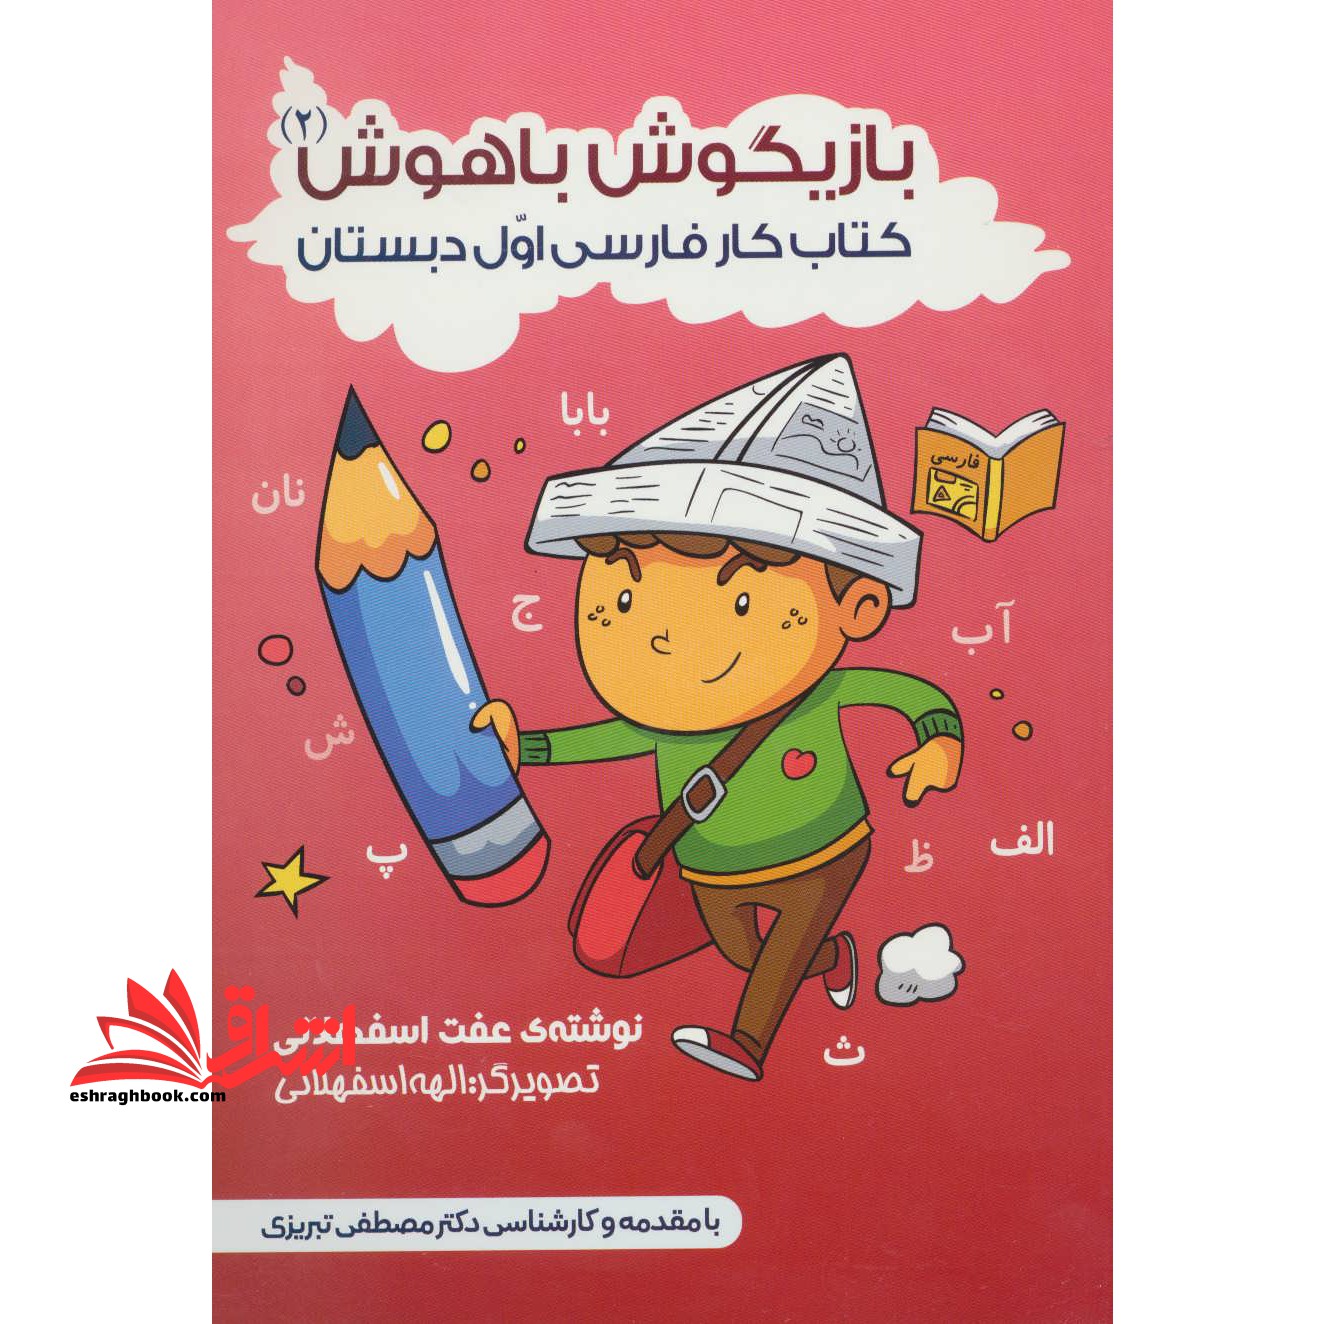 کتاب بازیگوش باهوش ۲ - کتاب کار فارسی اول دبستان